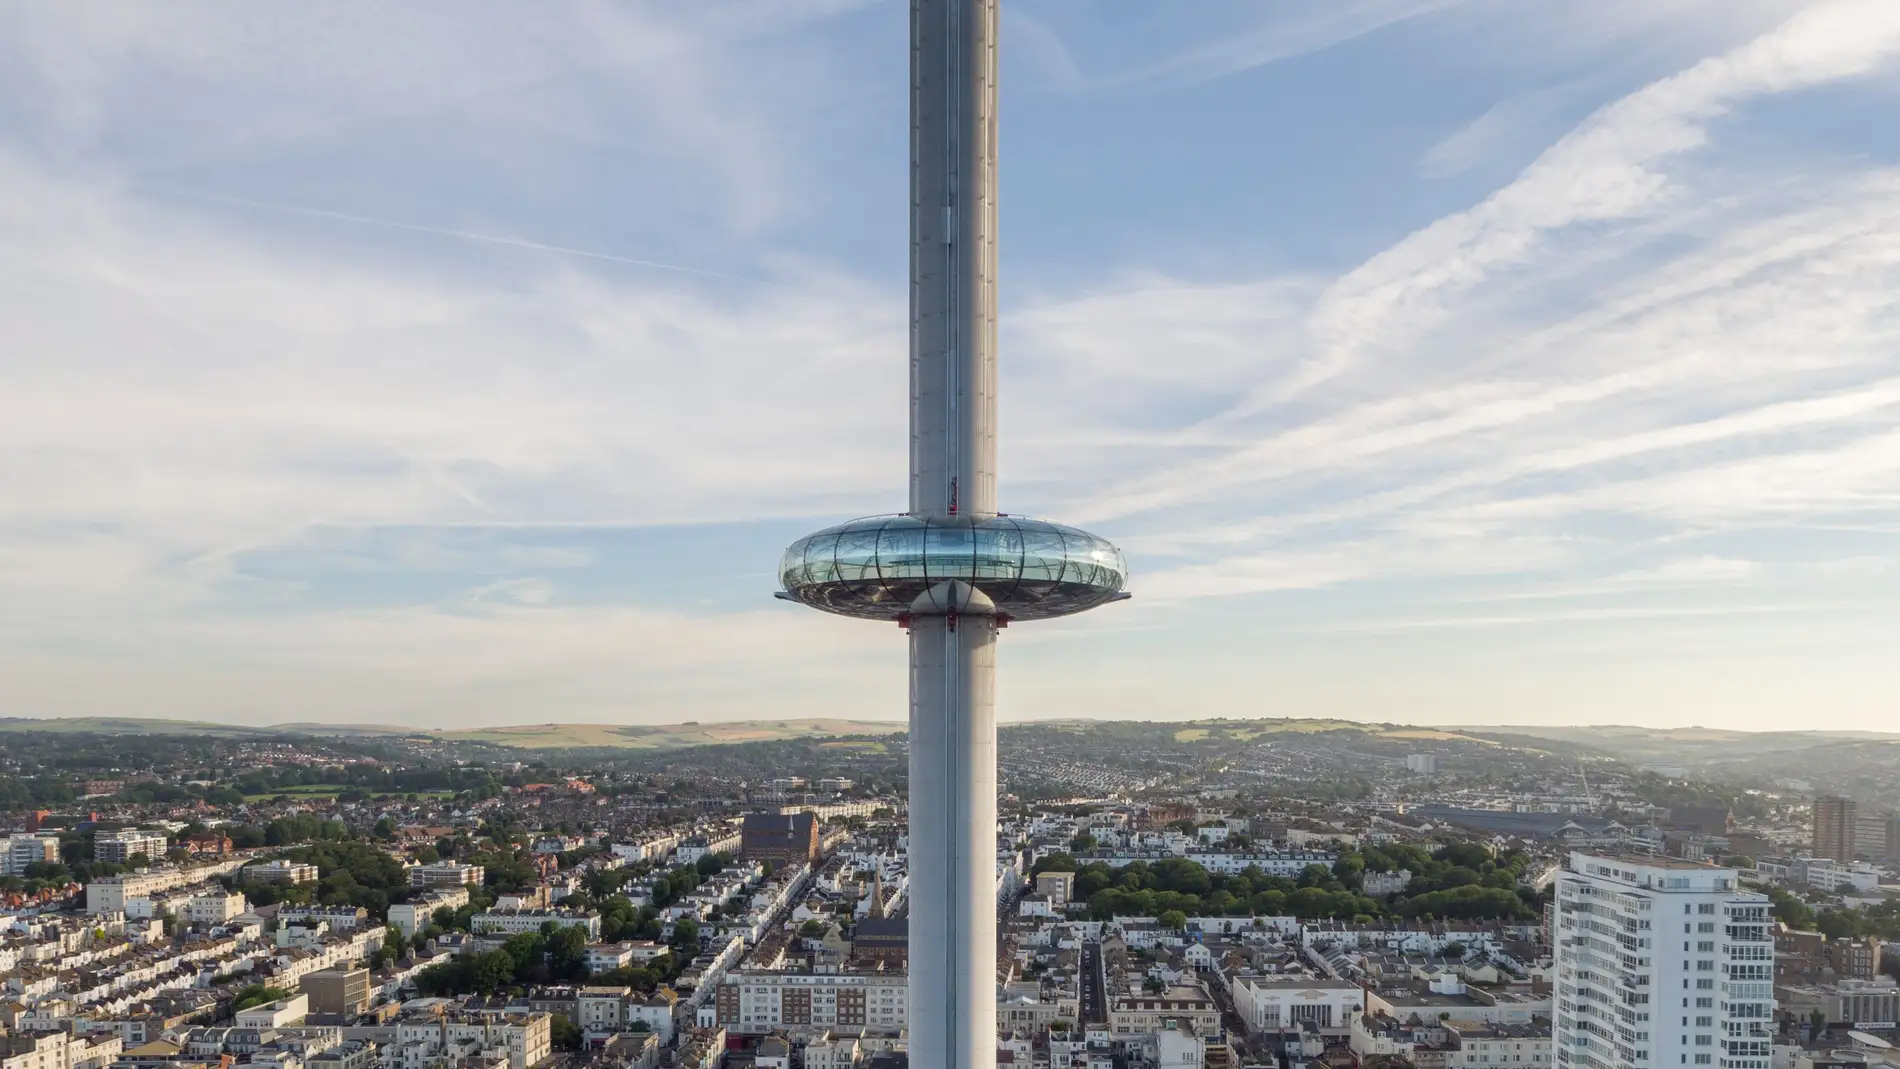 ¿Sabías que la torre más esbelta del mundo está en Brighton?